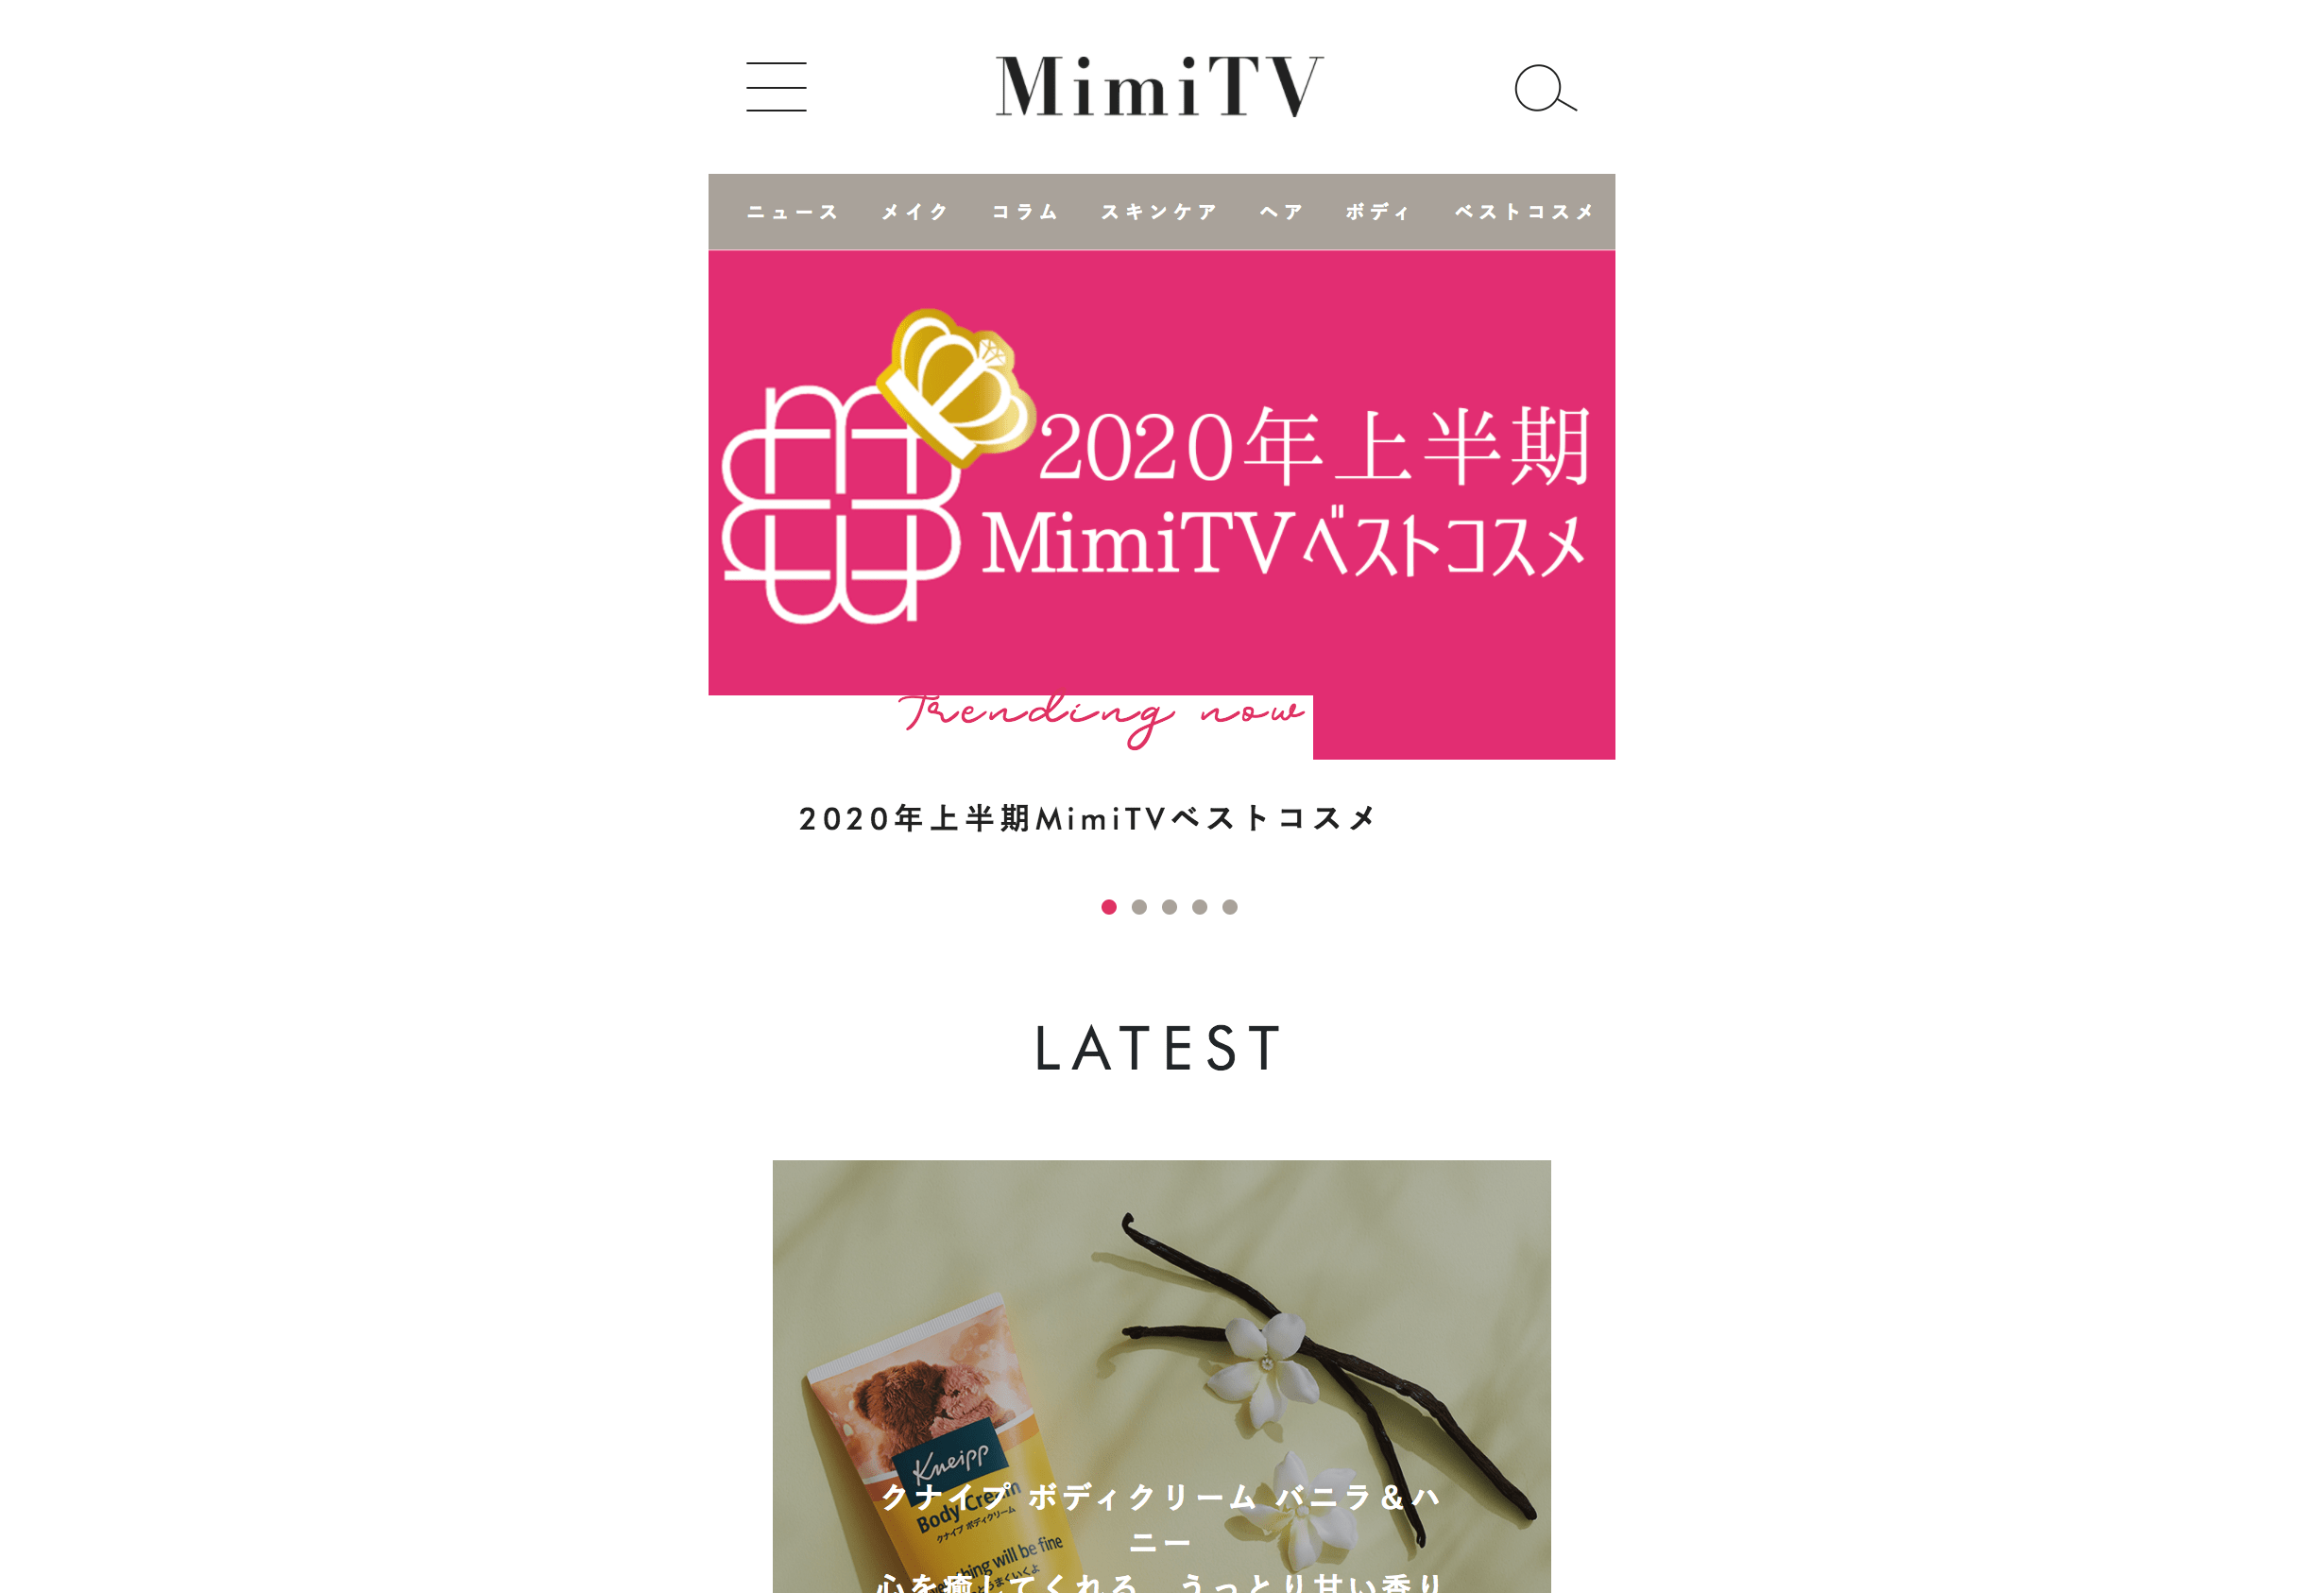 MimiTV